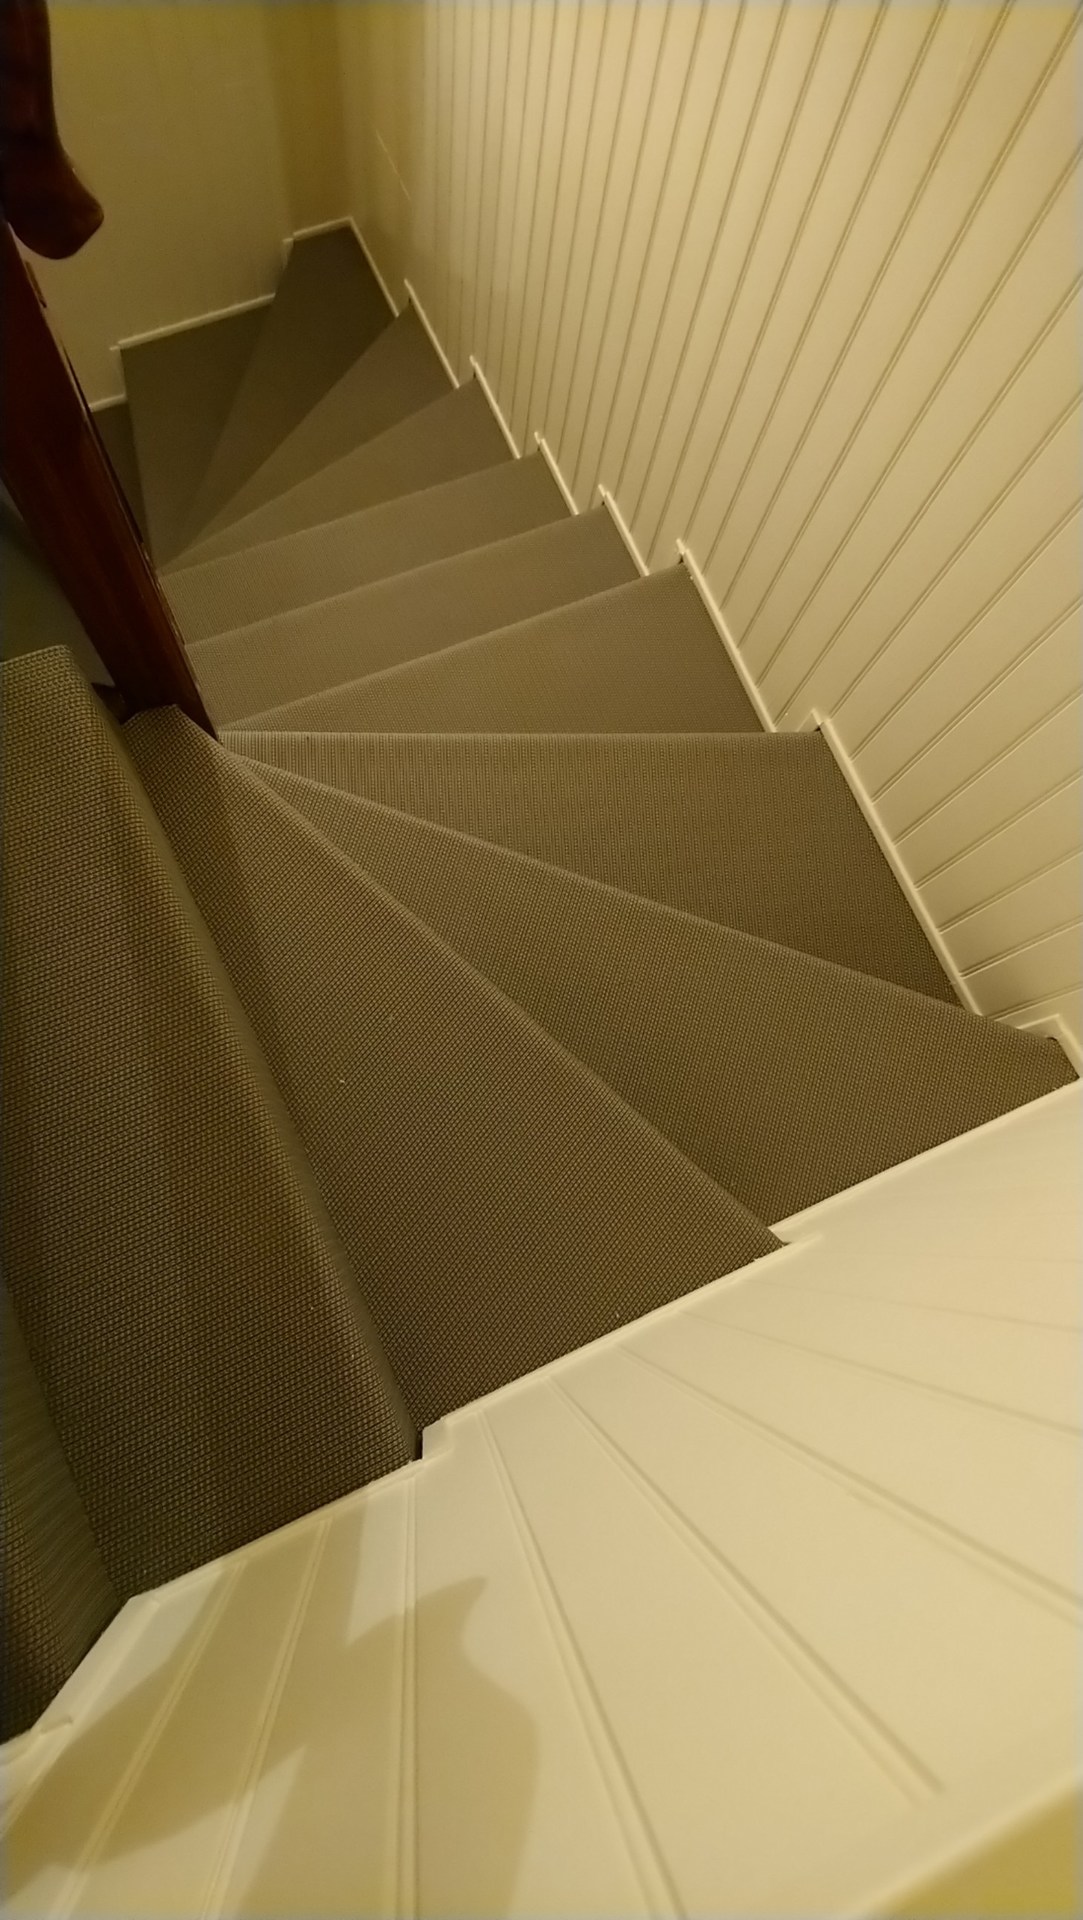 Ref vign corefi renovation escalier dickson 2